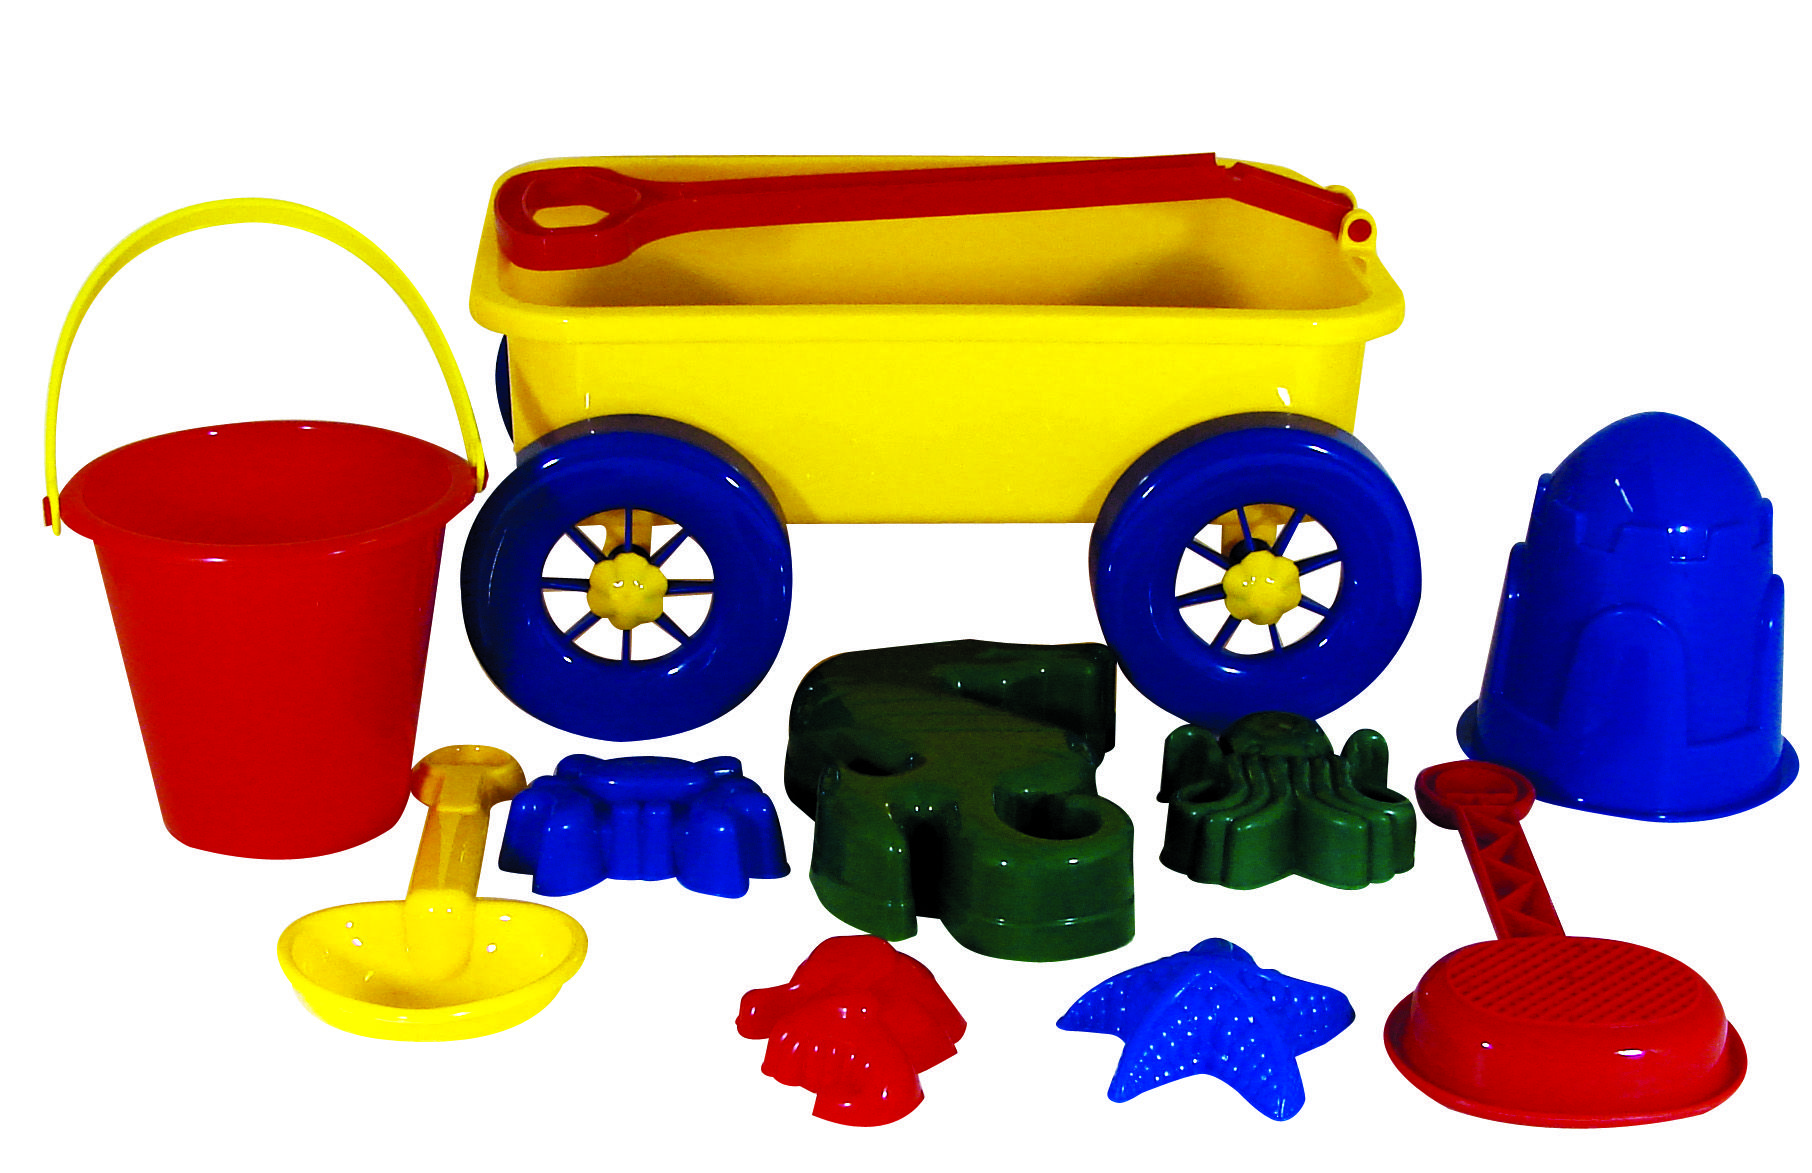 toy beach wagon